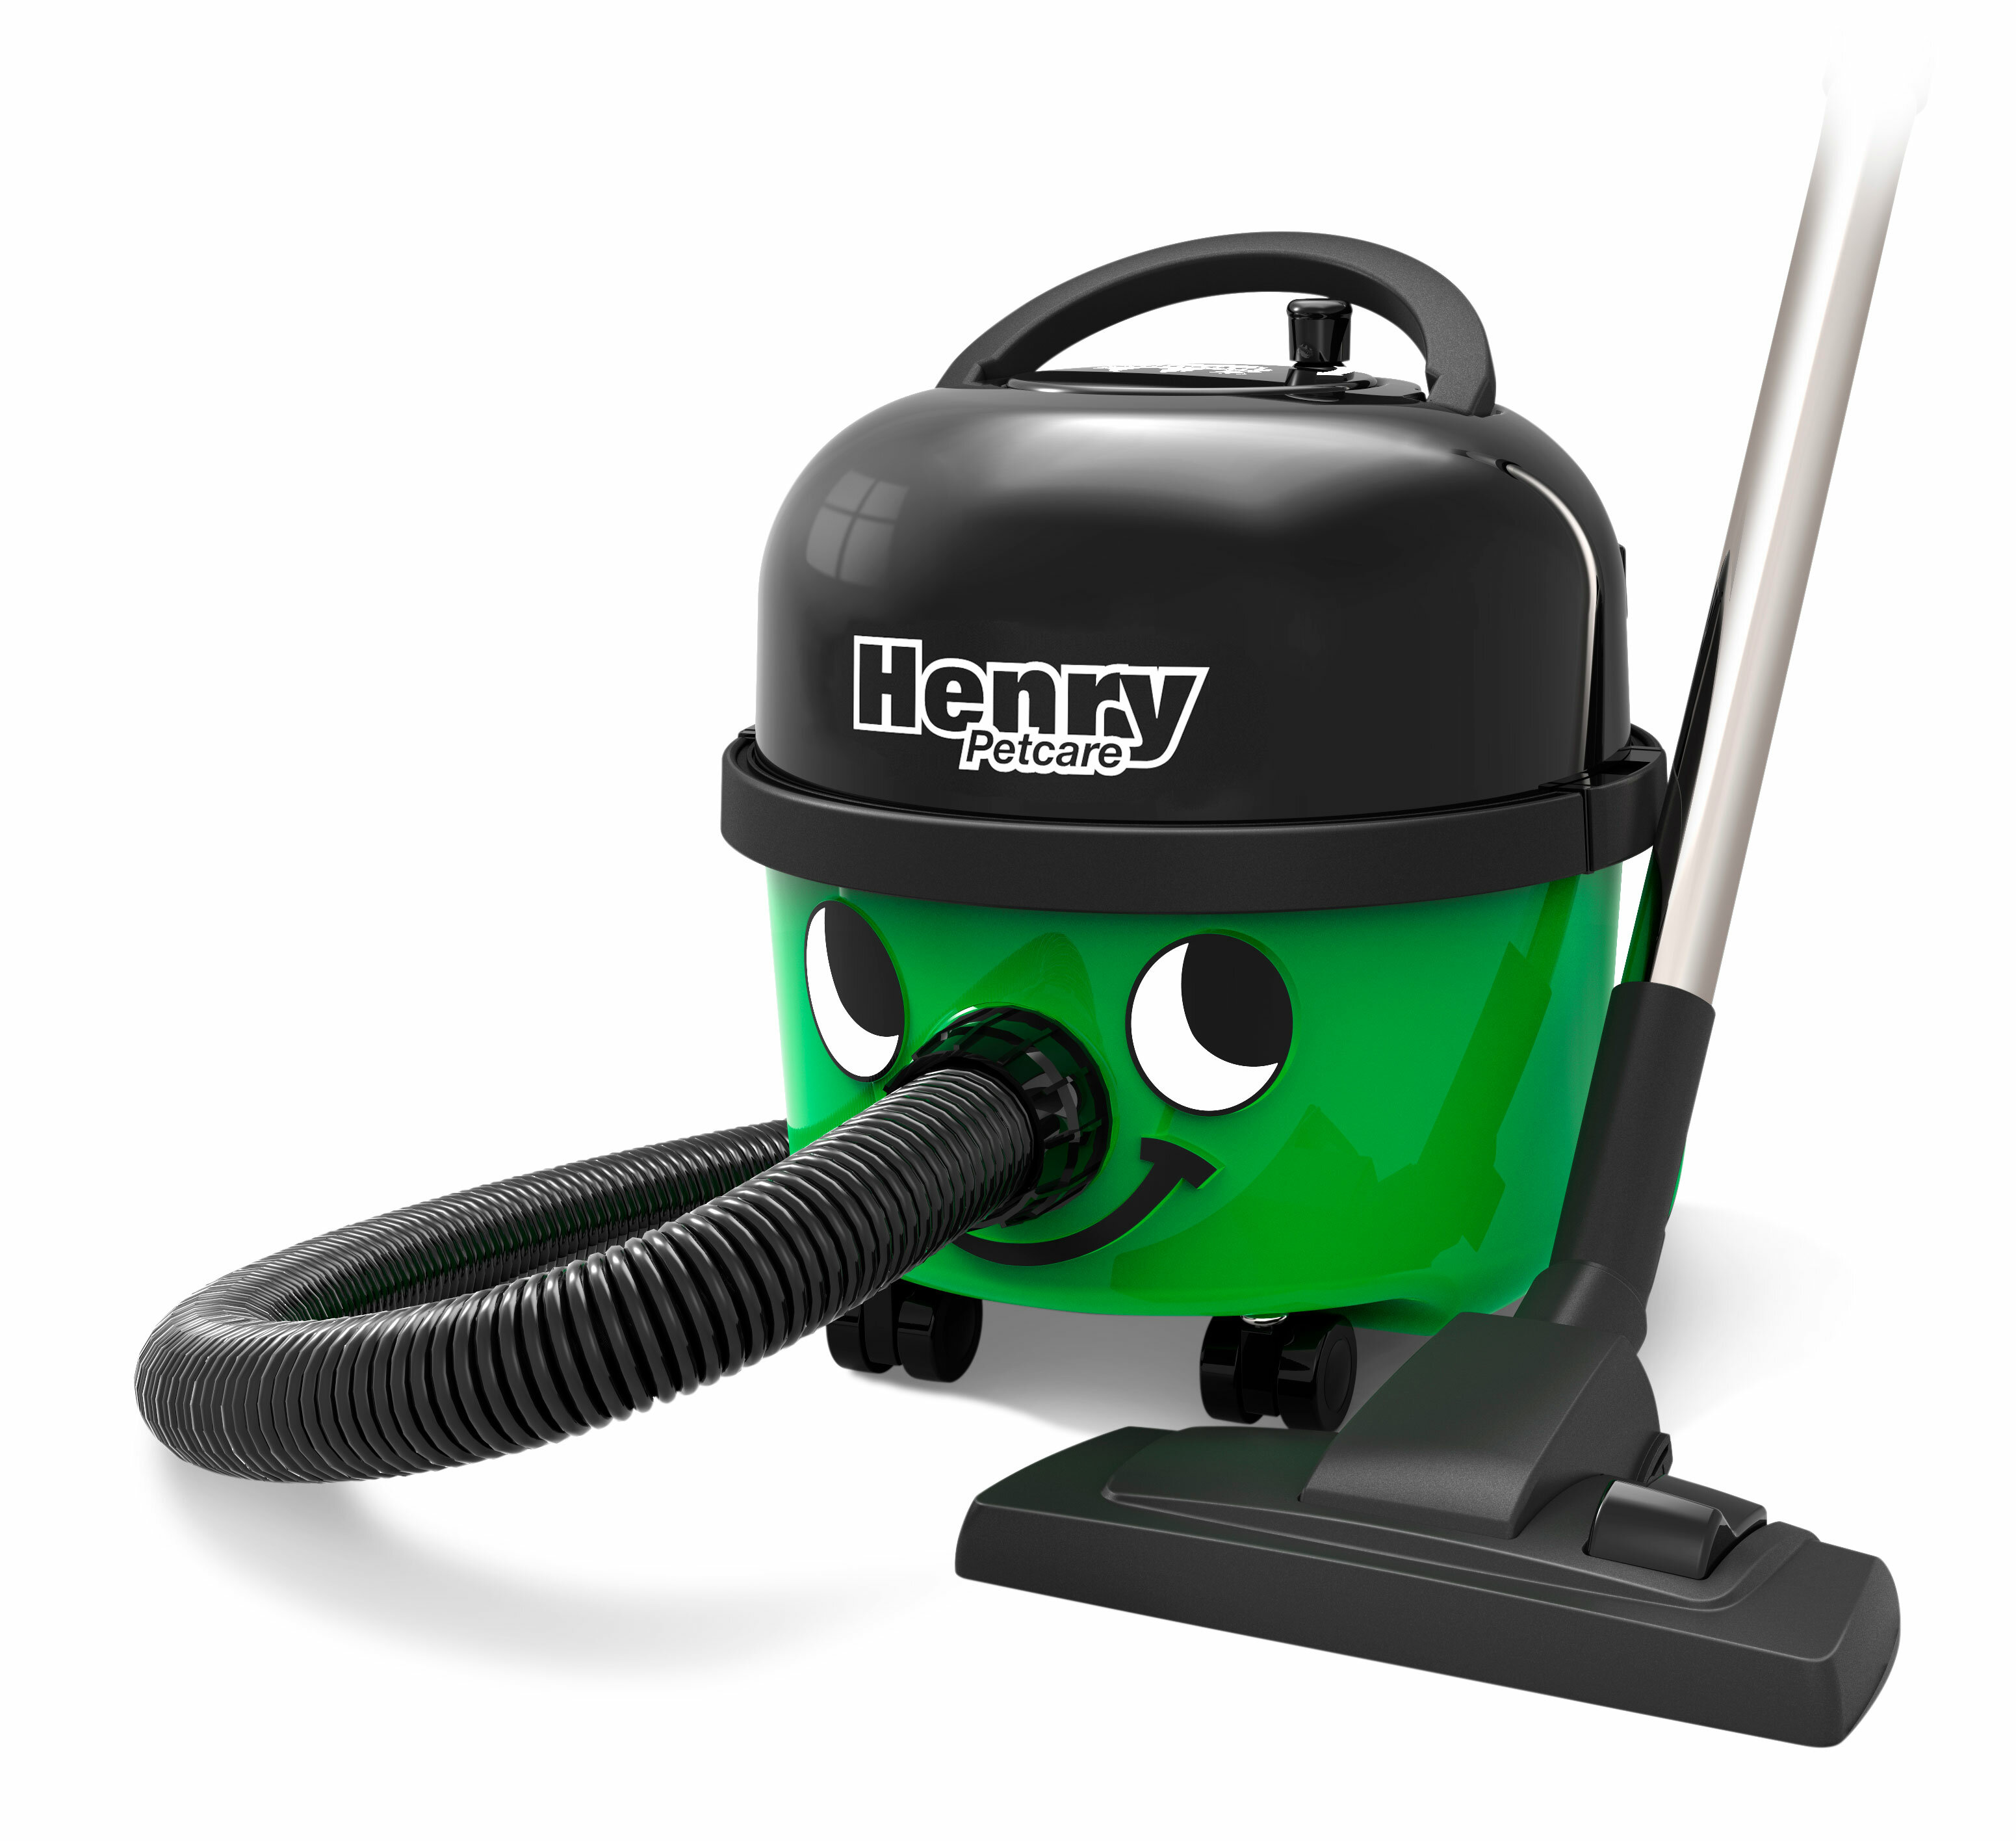 Пылесосы green. Пылесос Henry Numatic. Пылесос Numatic Henry HVR 200-12. Зелёный пылесос Хенри. Пылесос Henry зеленый.